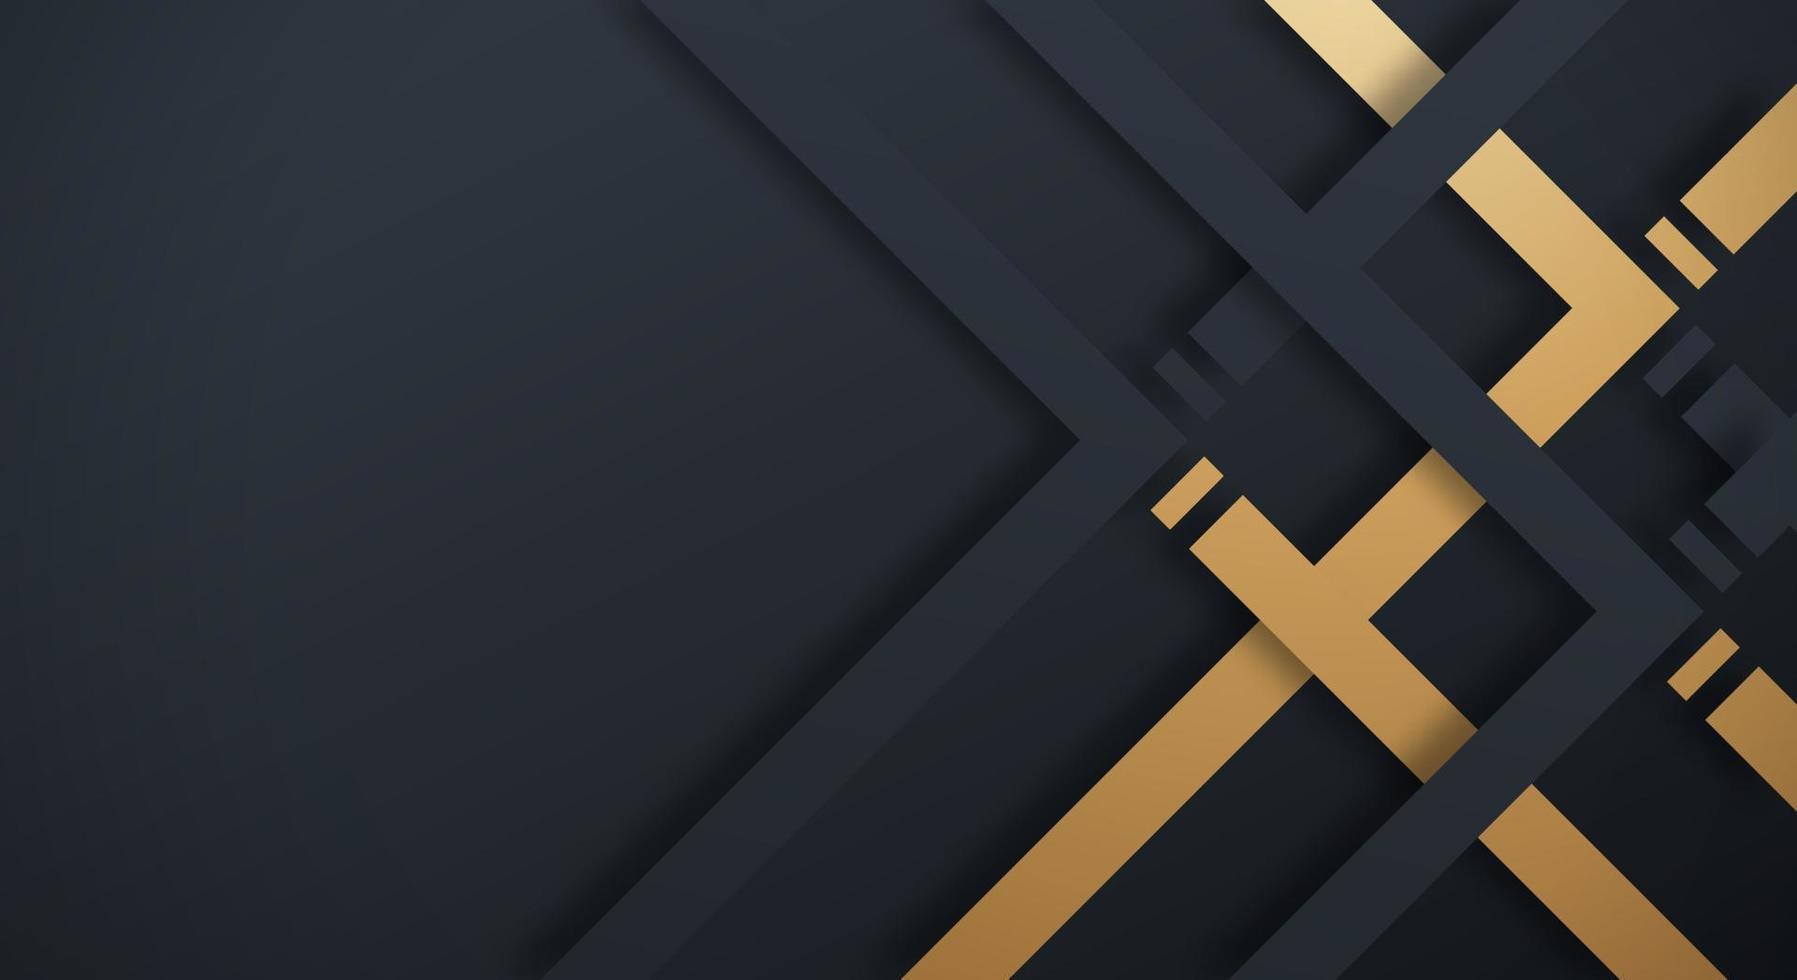 abstrakt mörk Marin 3d bakgrund med guld och svart rader papper skära stil texturerat. användbar för dekorativ webb layout, affisch, baner, företags- broschyr och seminarium mall design vektor